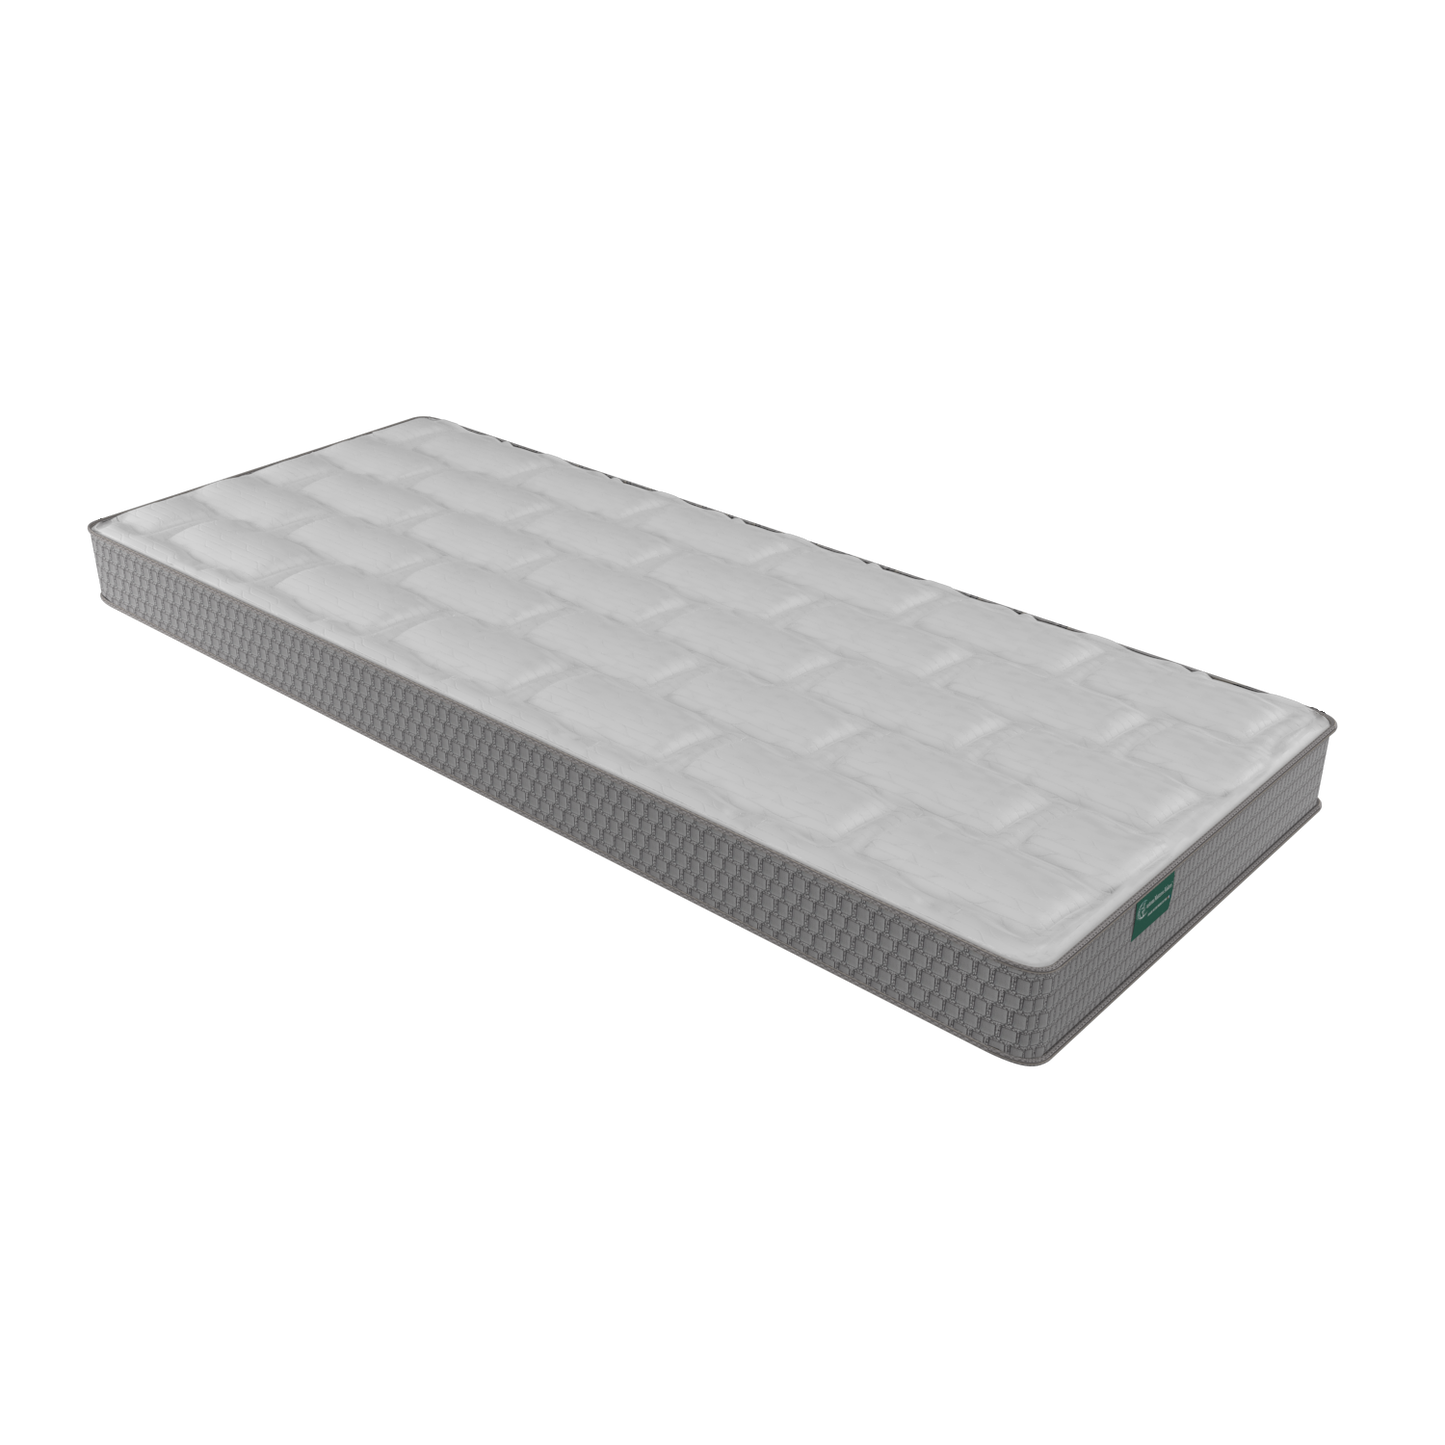 Cape, 30" x 73.5" mattress